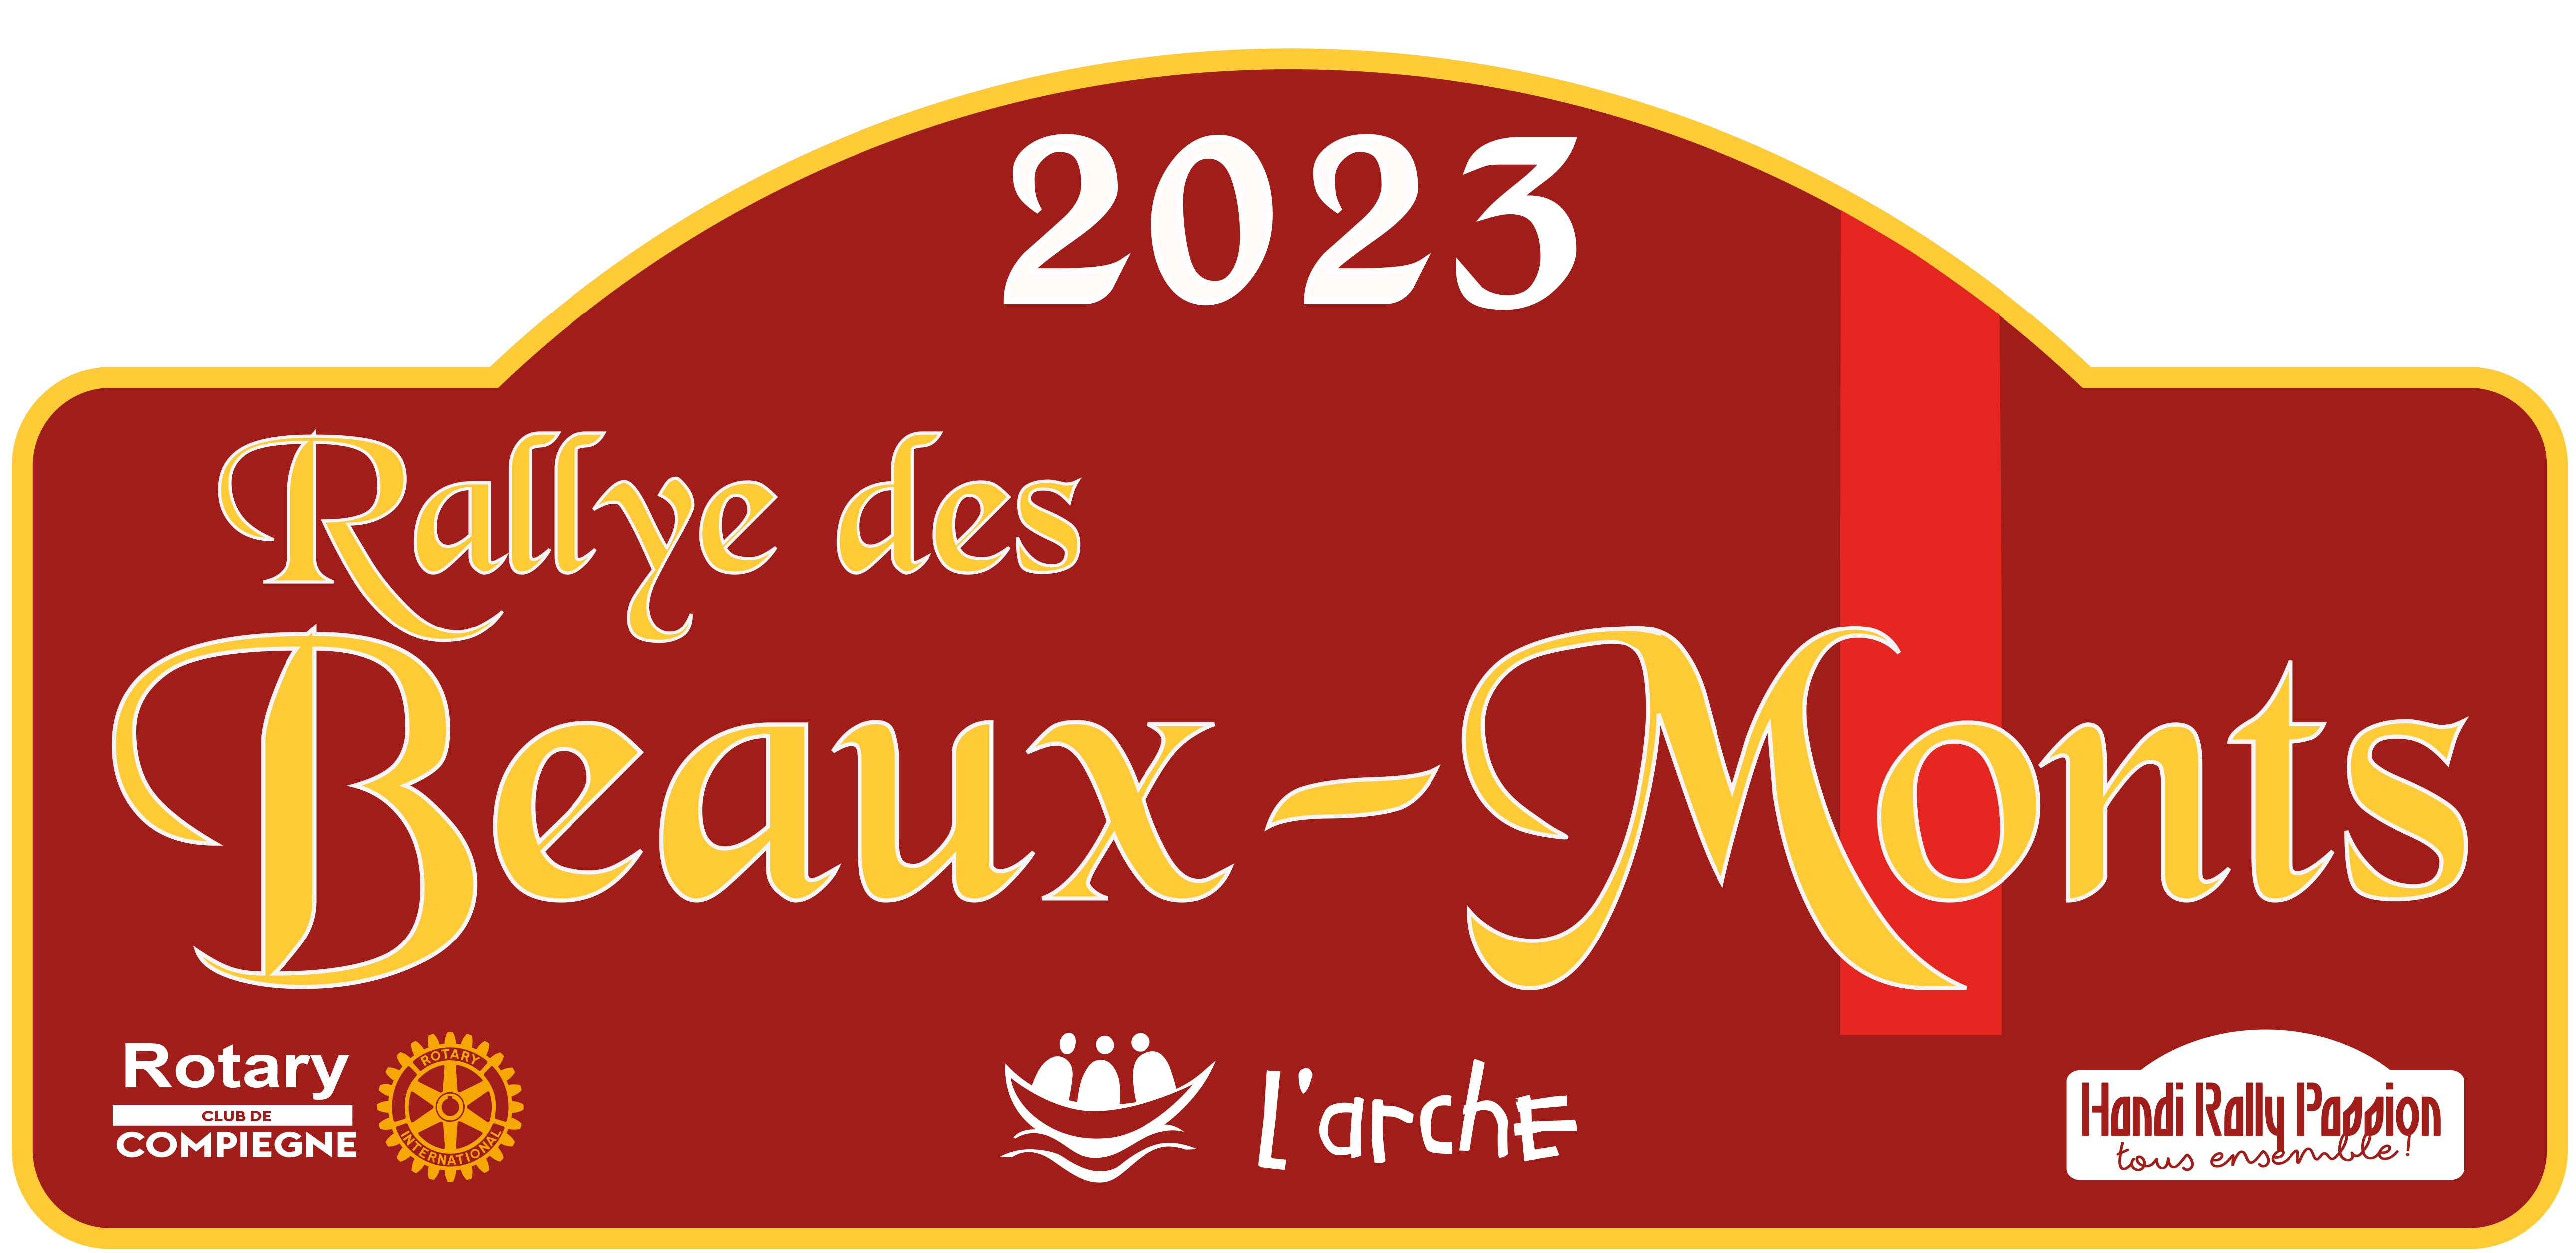 Rallye des Beaux-Monts_le 9 septembre 2023 Logo